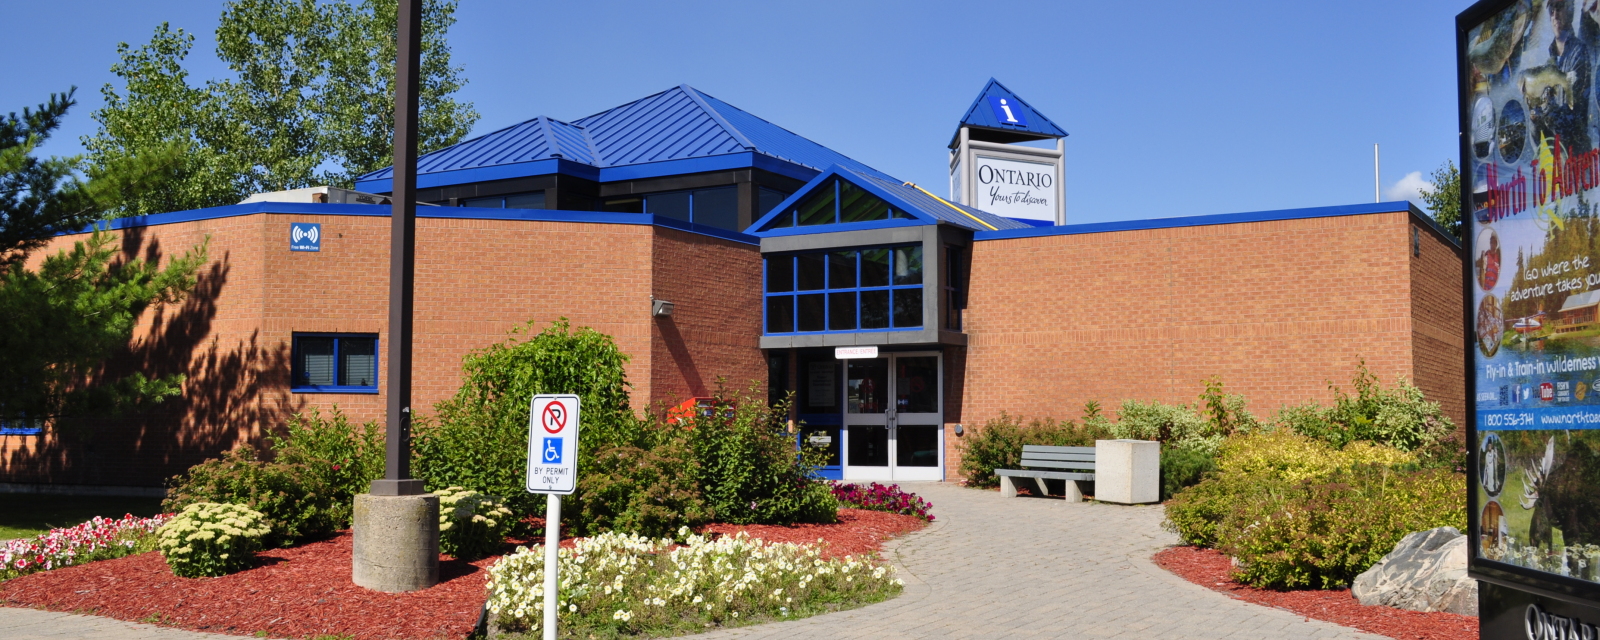 Centre d’information touristique de l’Ontario à Sault Ste. Marie